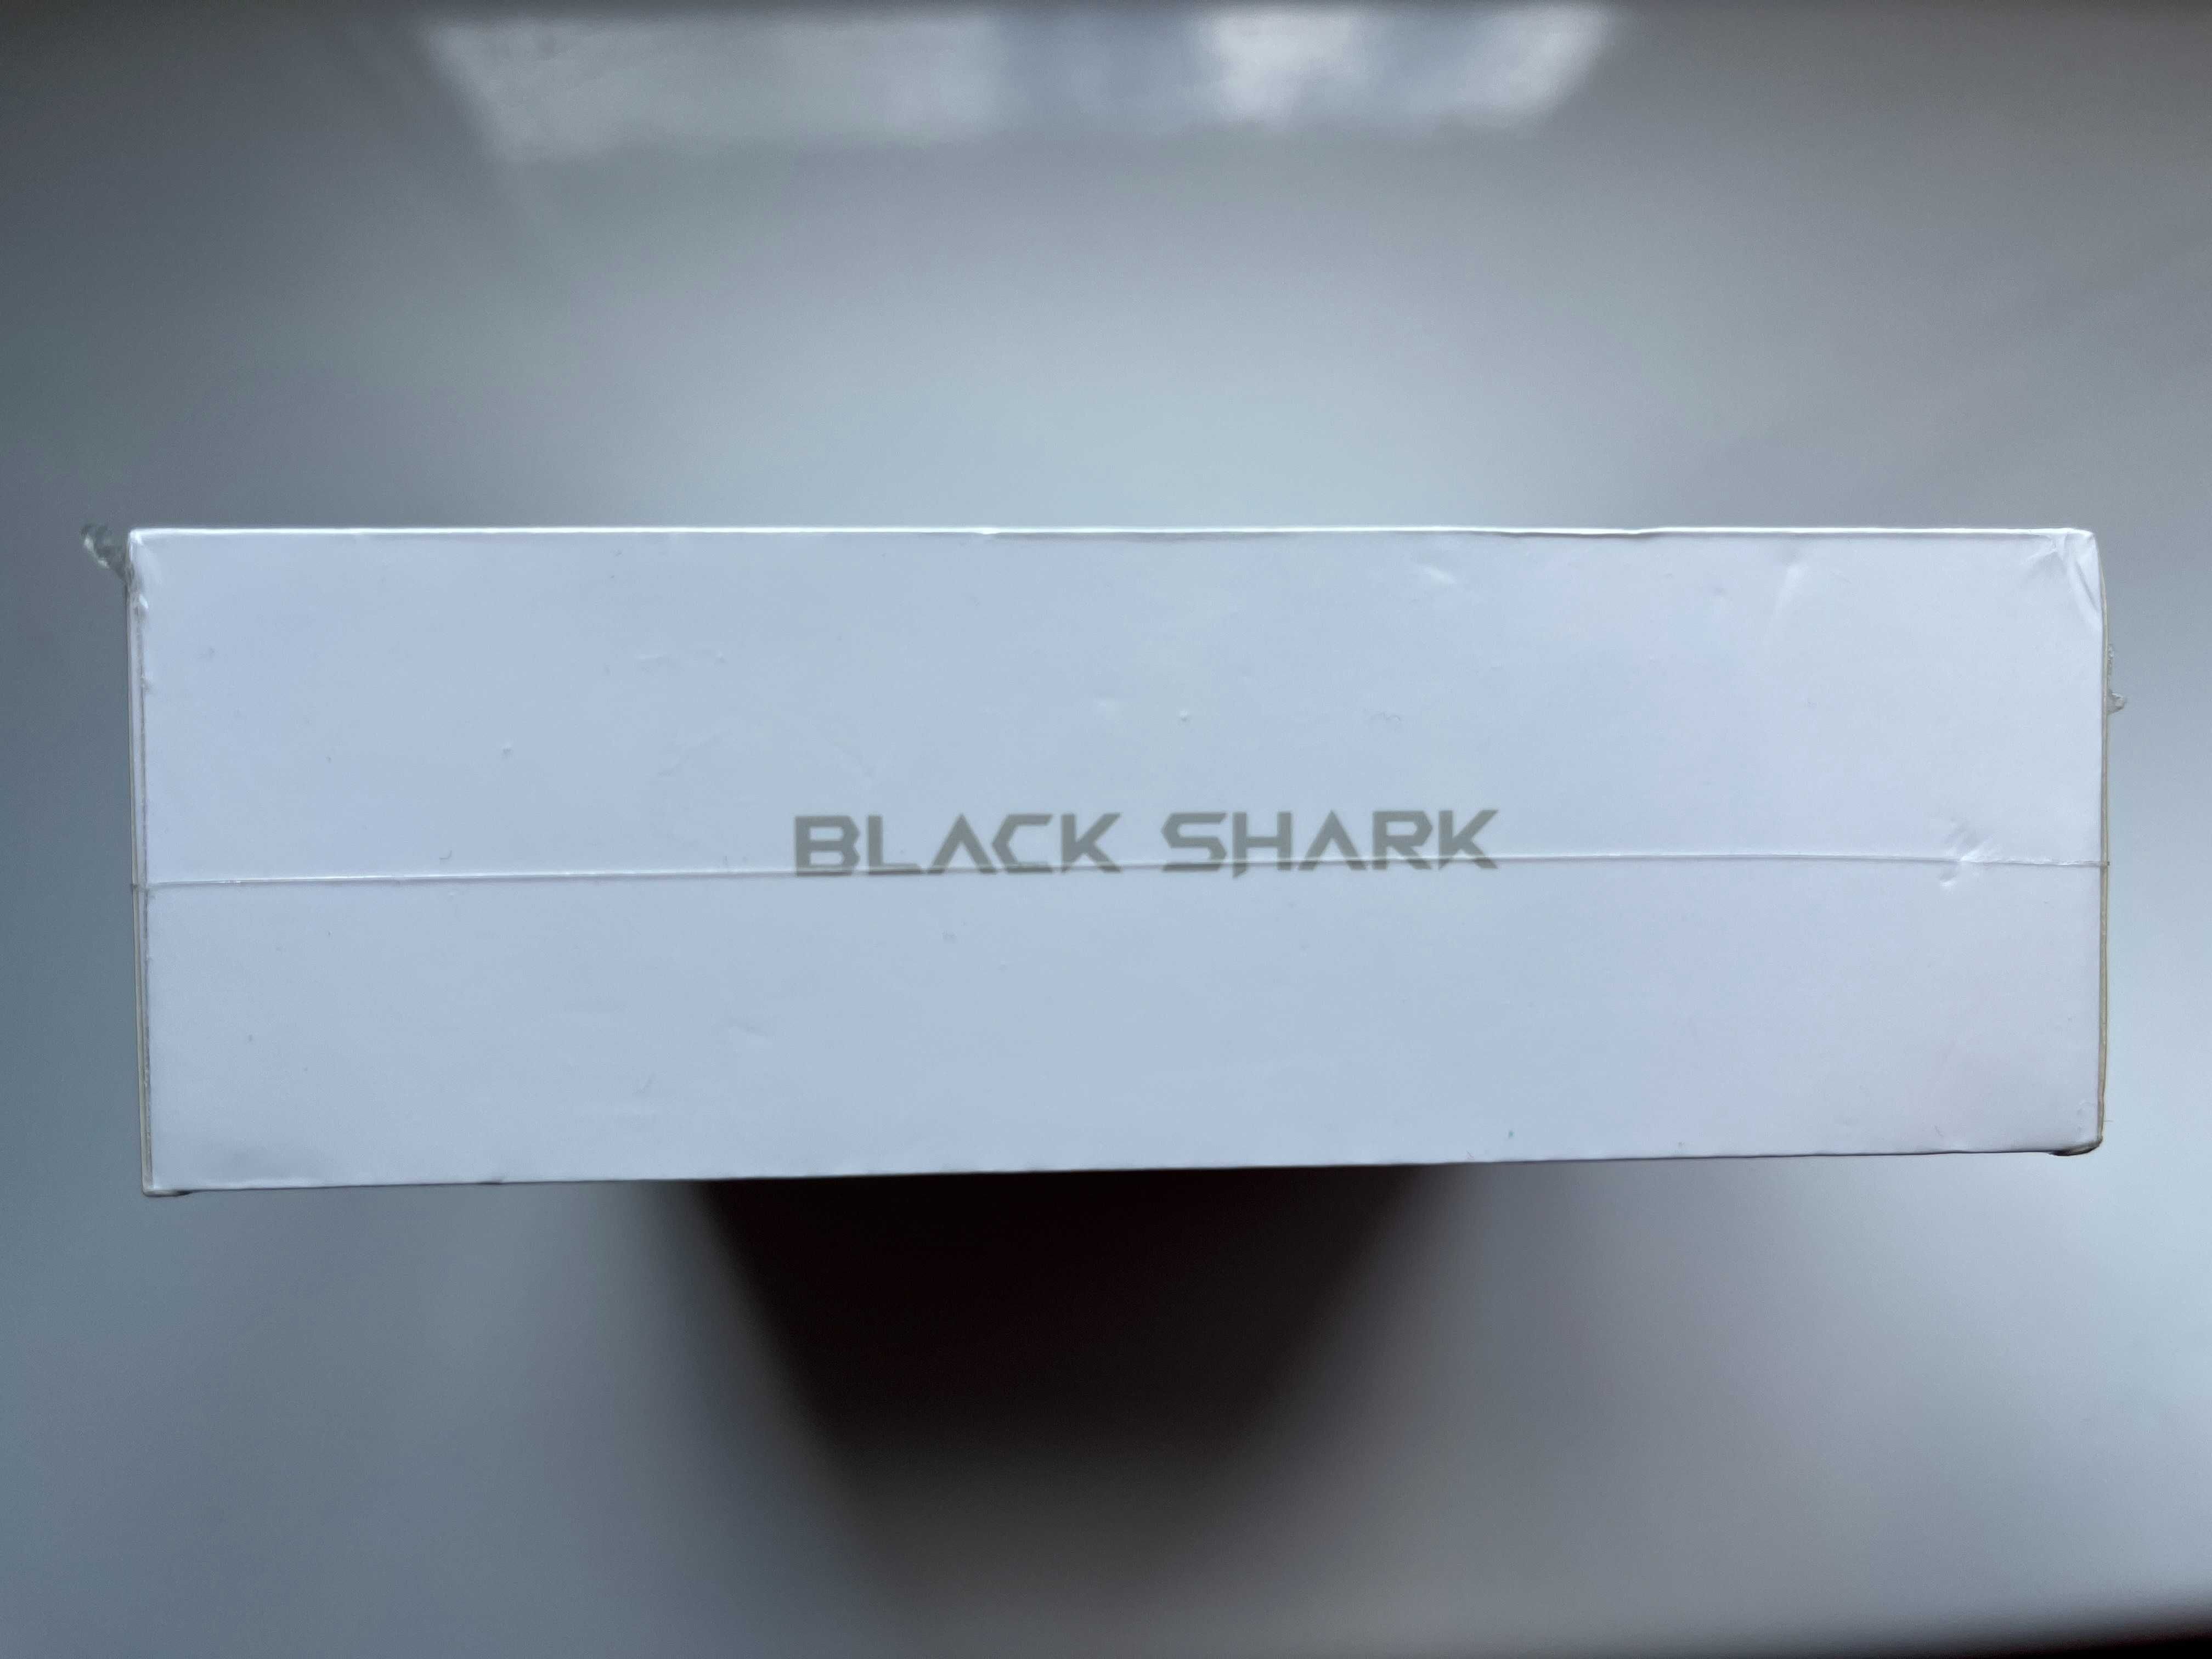 Black Shark JoyBuds słuchawki TWS Bluetooth Białe